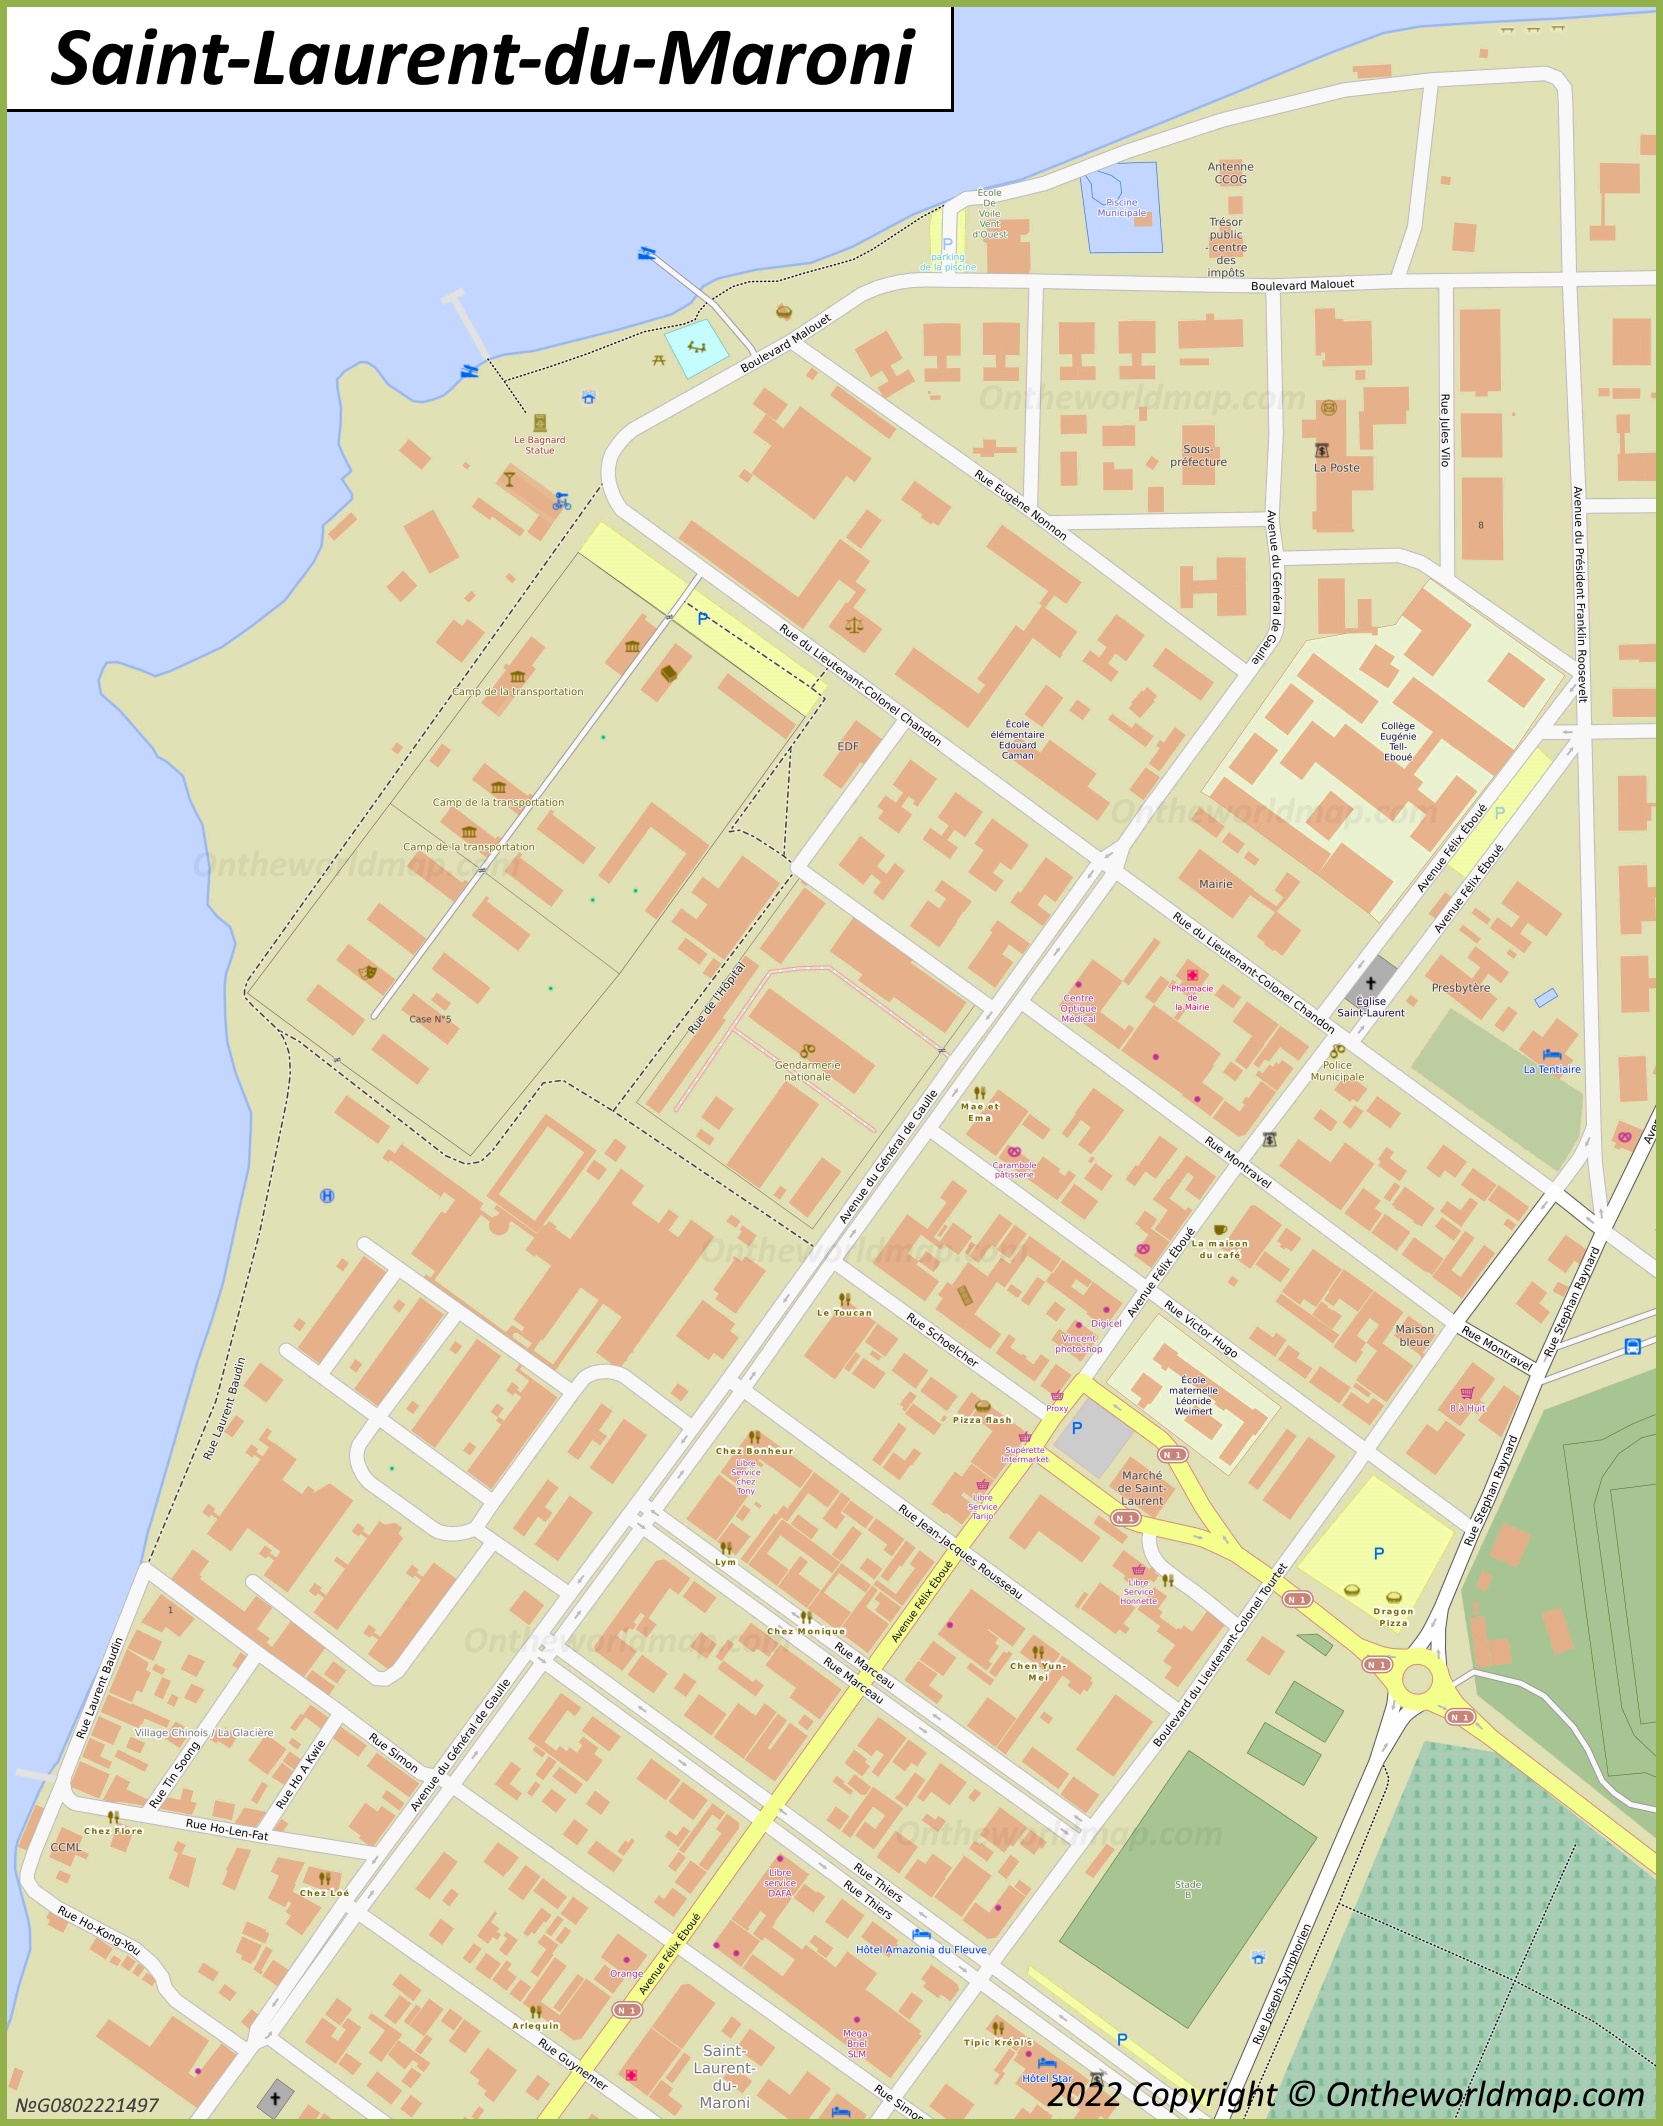 Saint-Laurent-du-Maroni City Centre Map